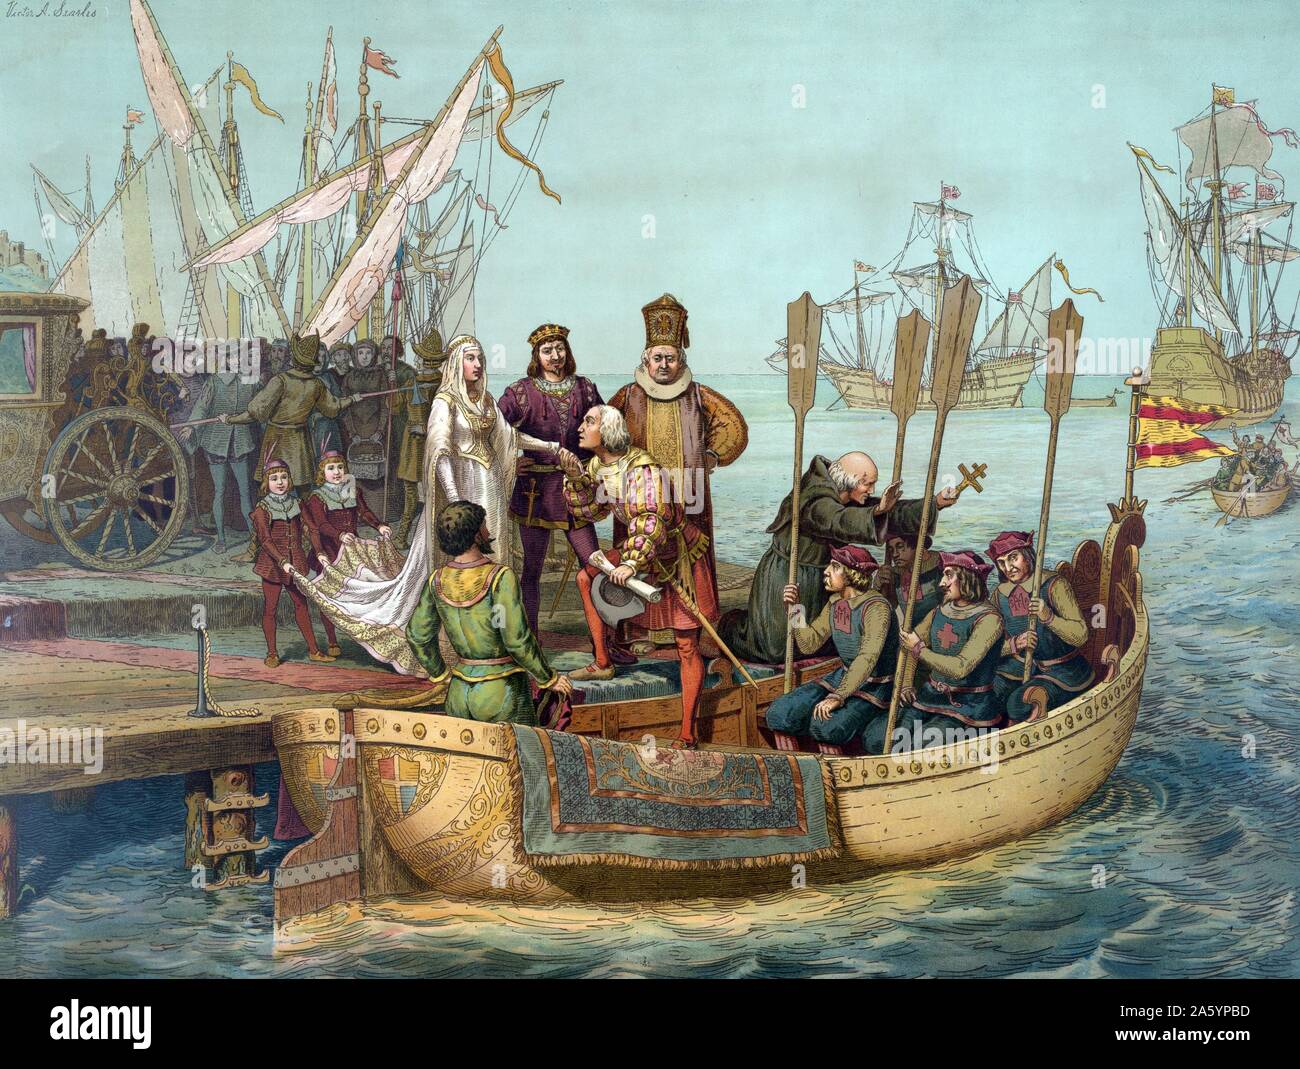 Farblitho von Christopher Columbus Farwell bewerben sich um die Königin von Spanien bei seiner Abreise. Datierte 1893 Stockfoto